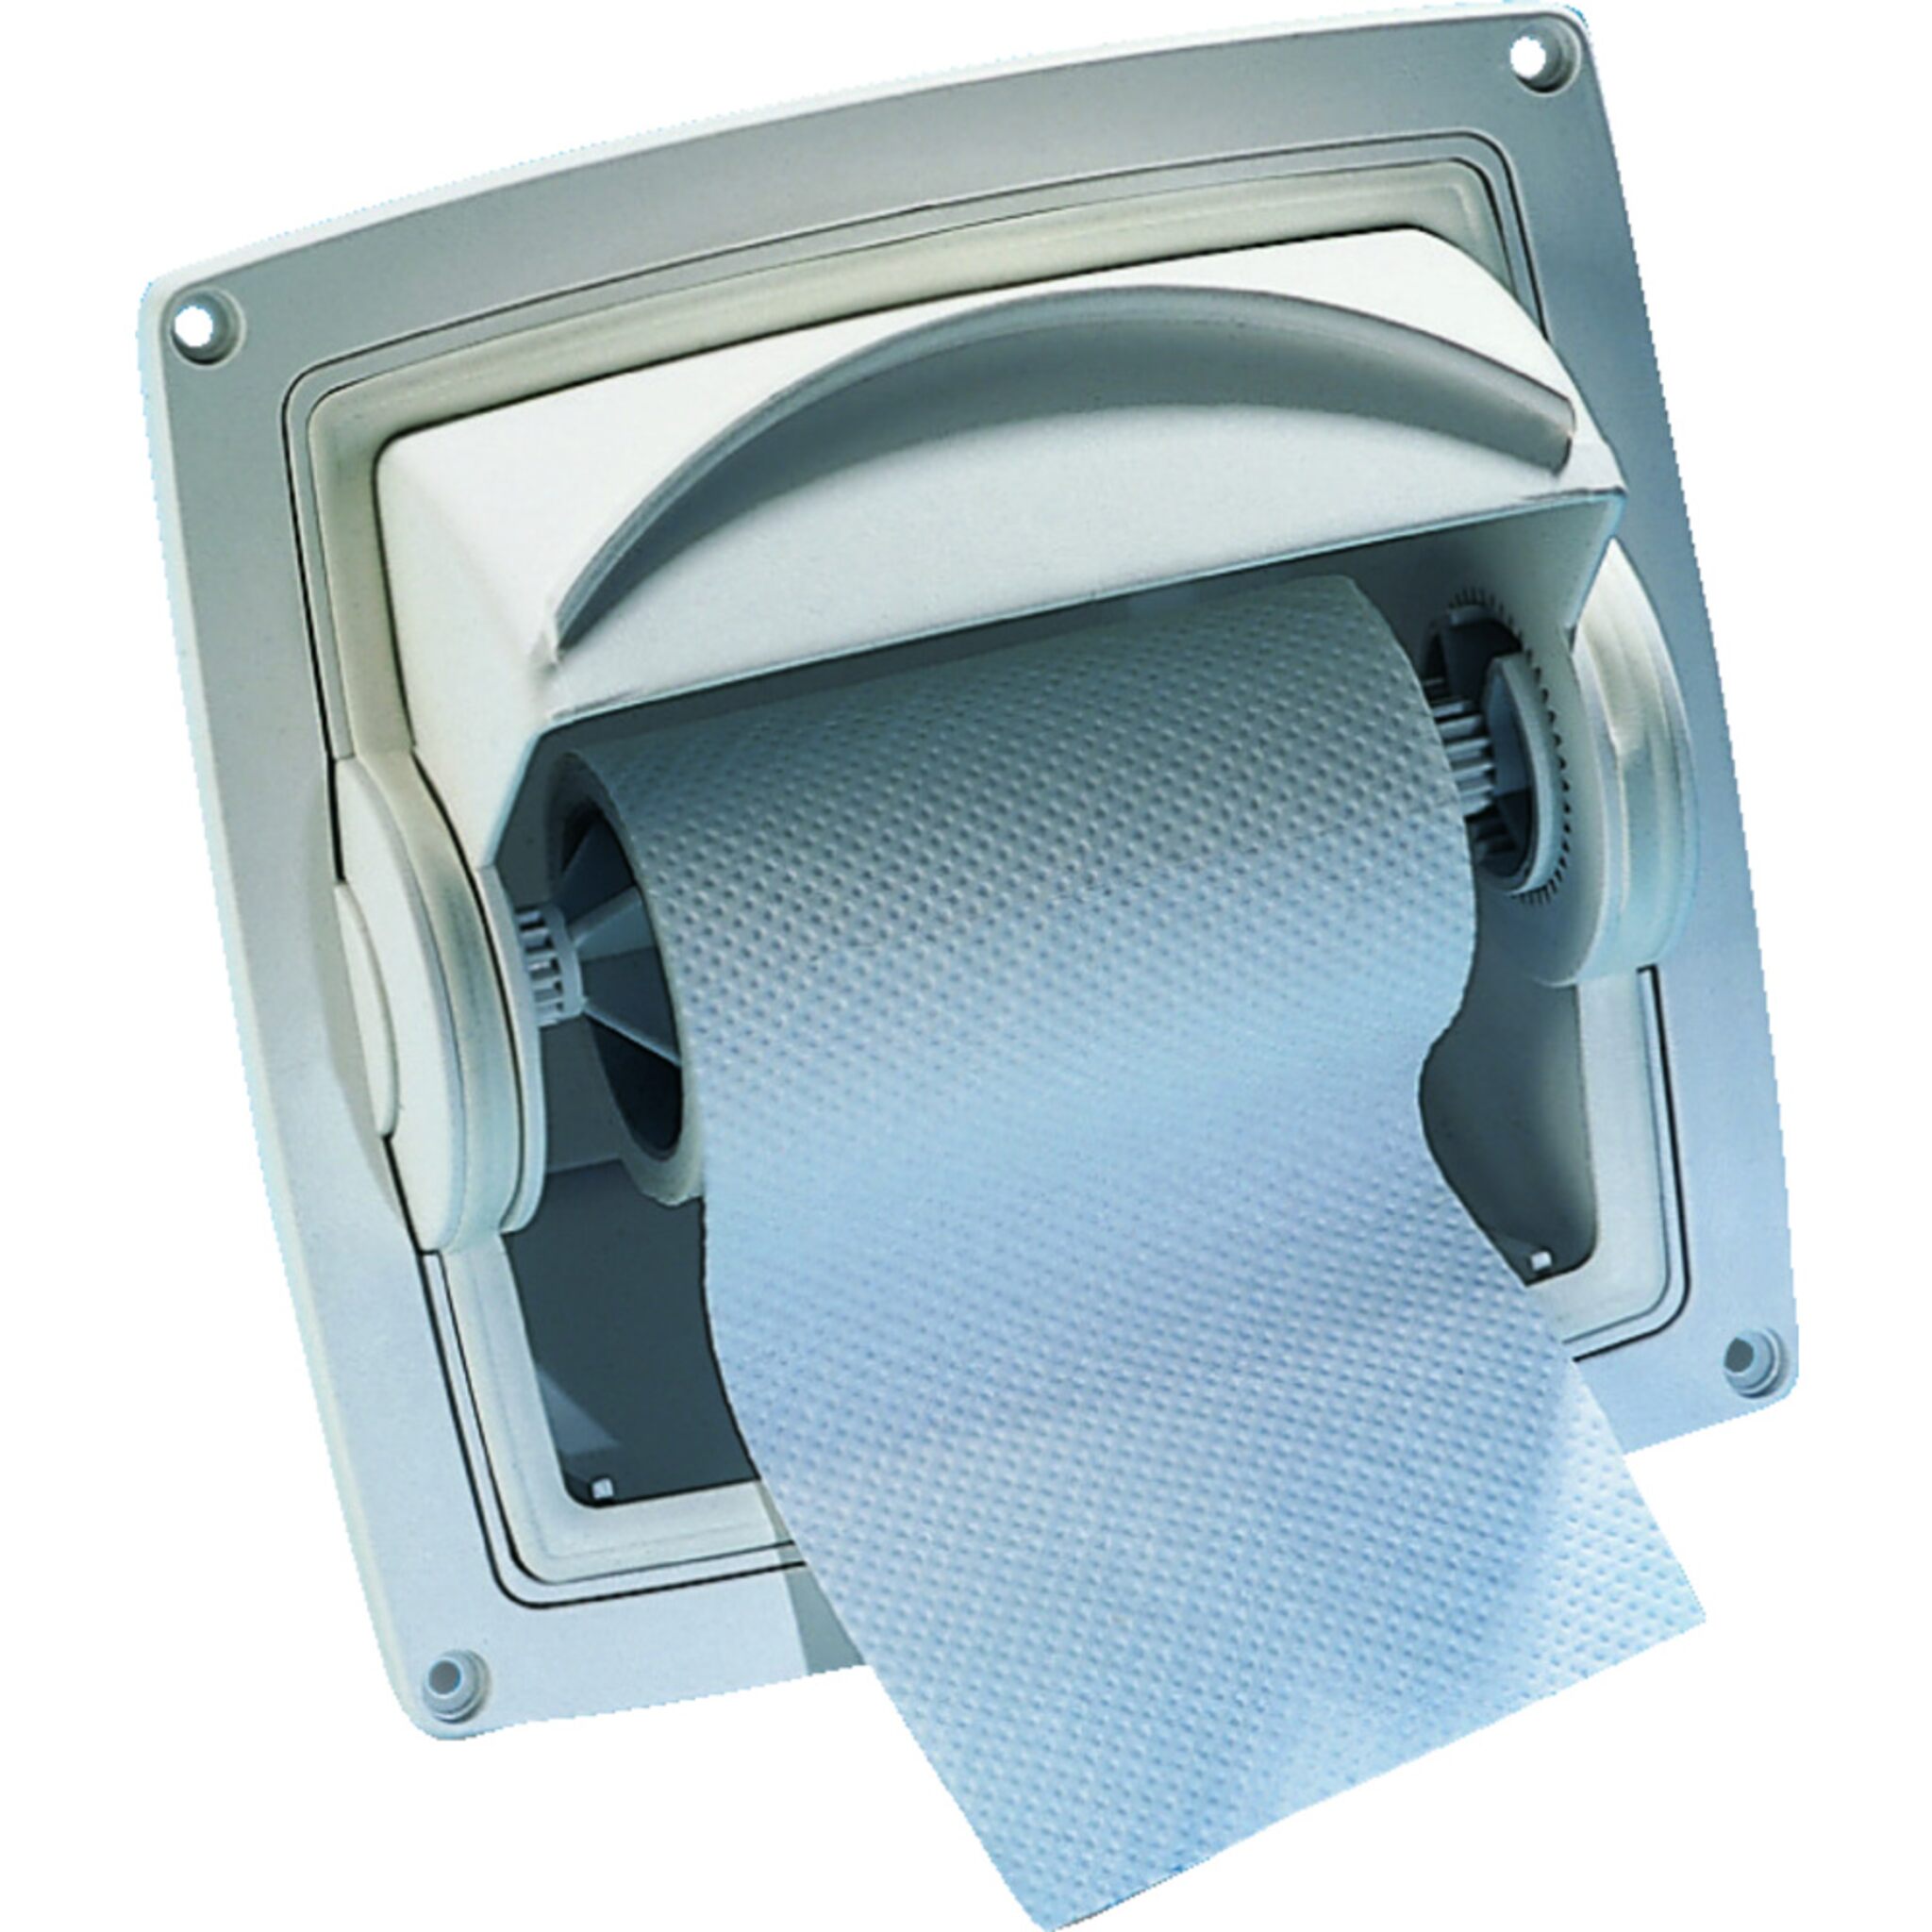 Dryroll toilet paper holder